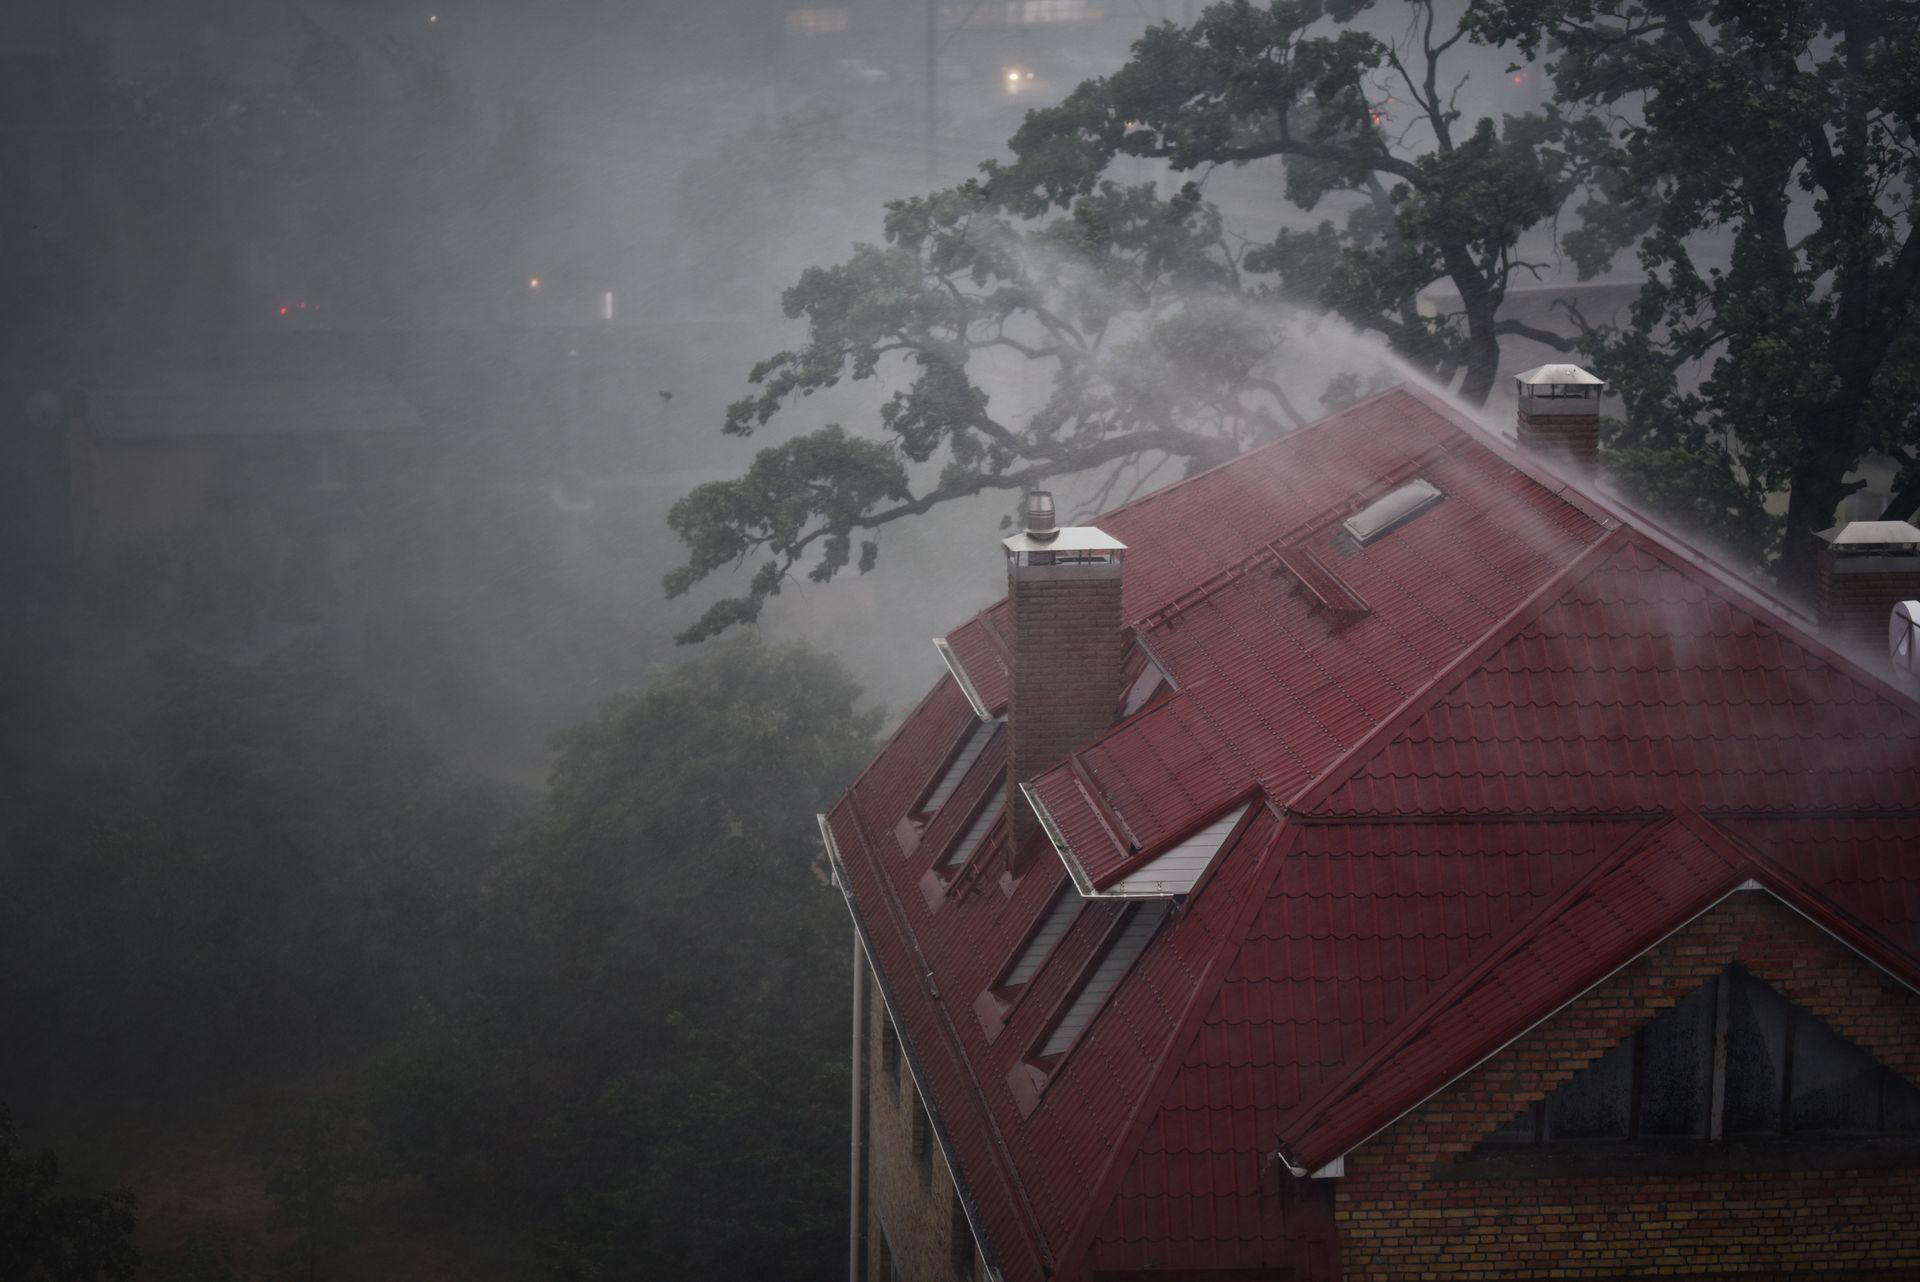 Une maison sous la tempête dont l'étanchéité est mise à rude épreuve